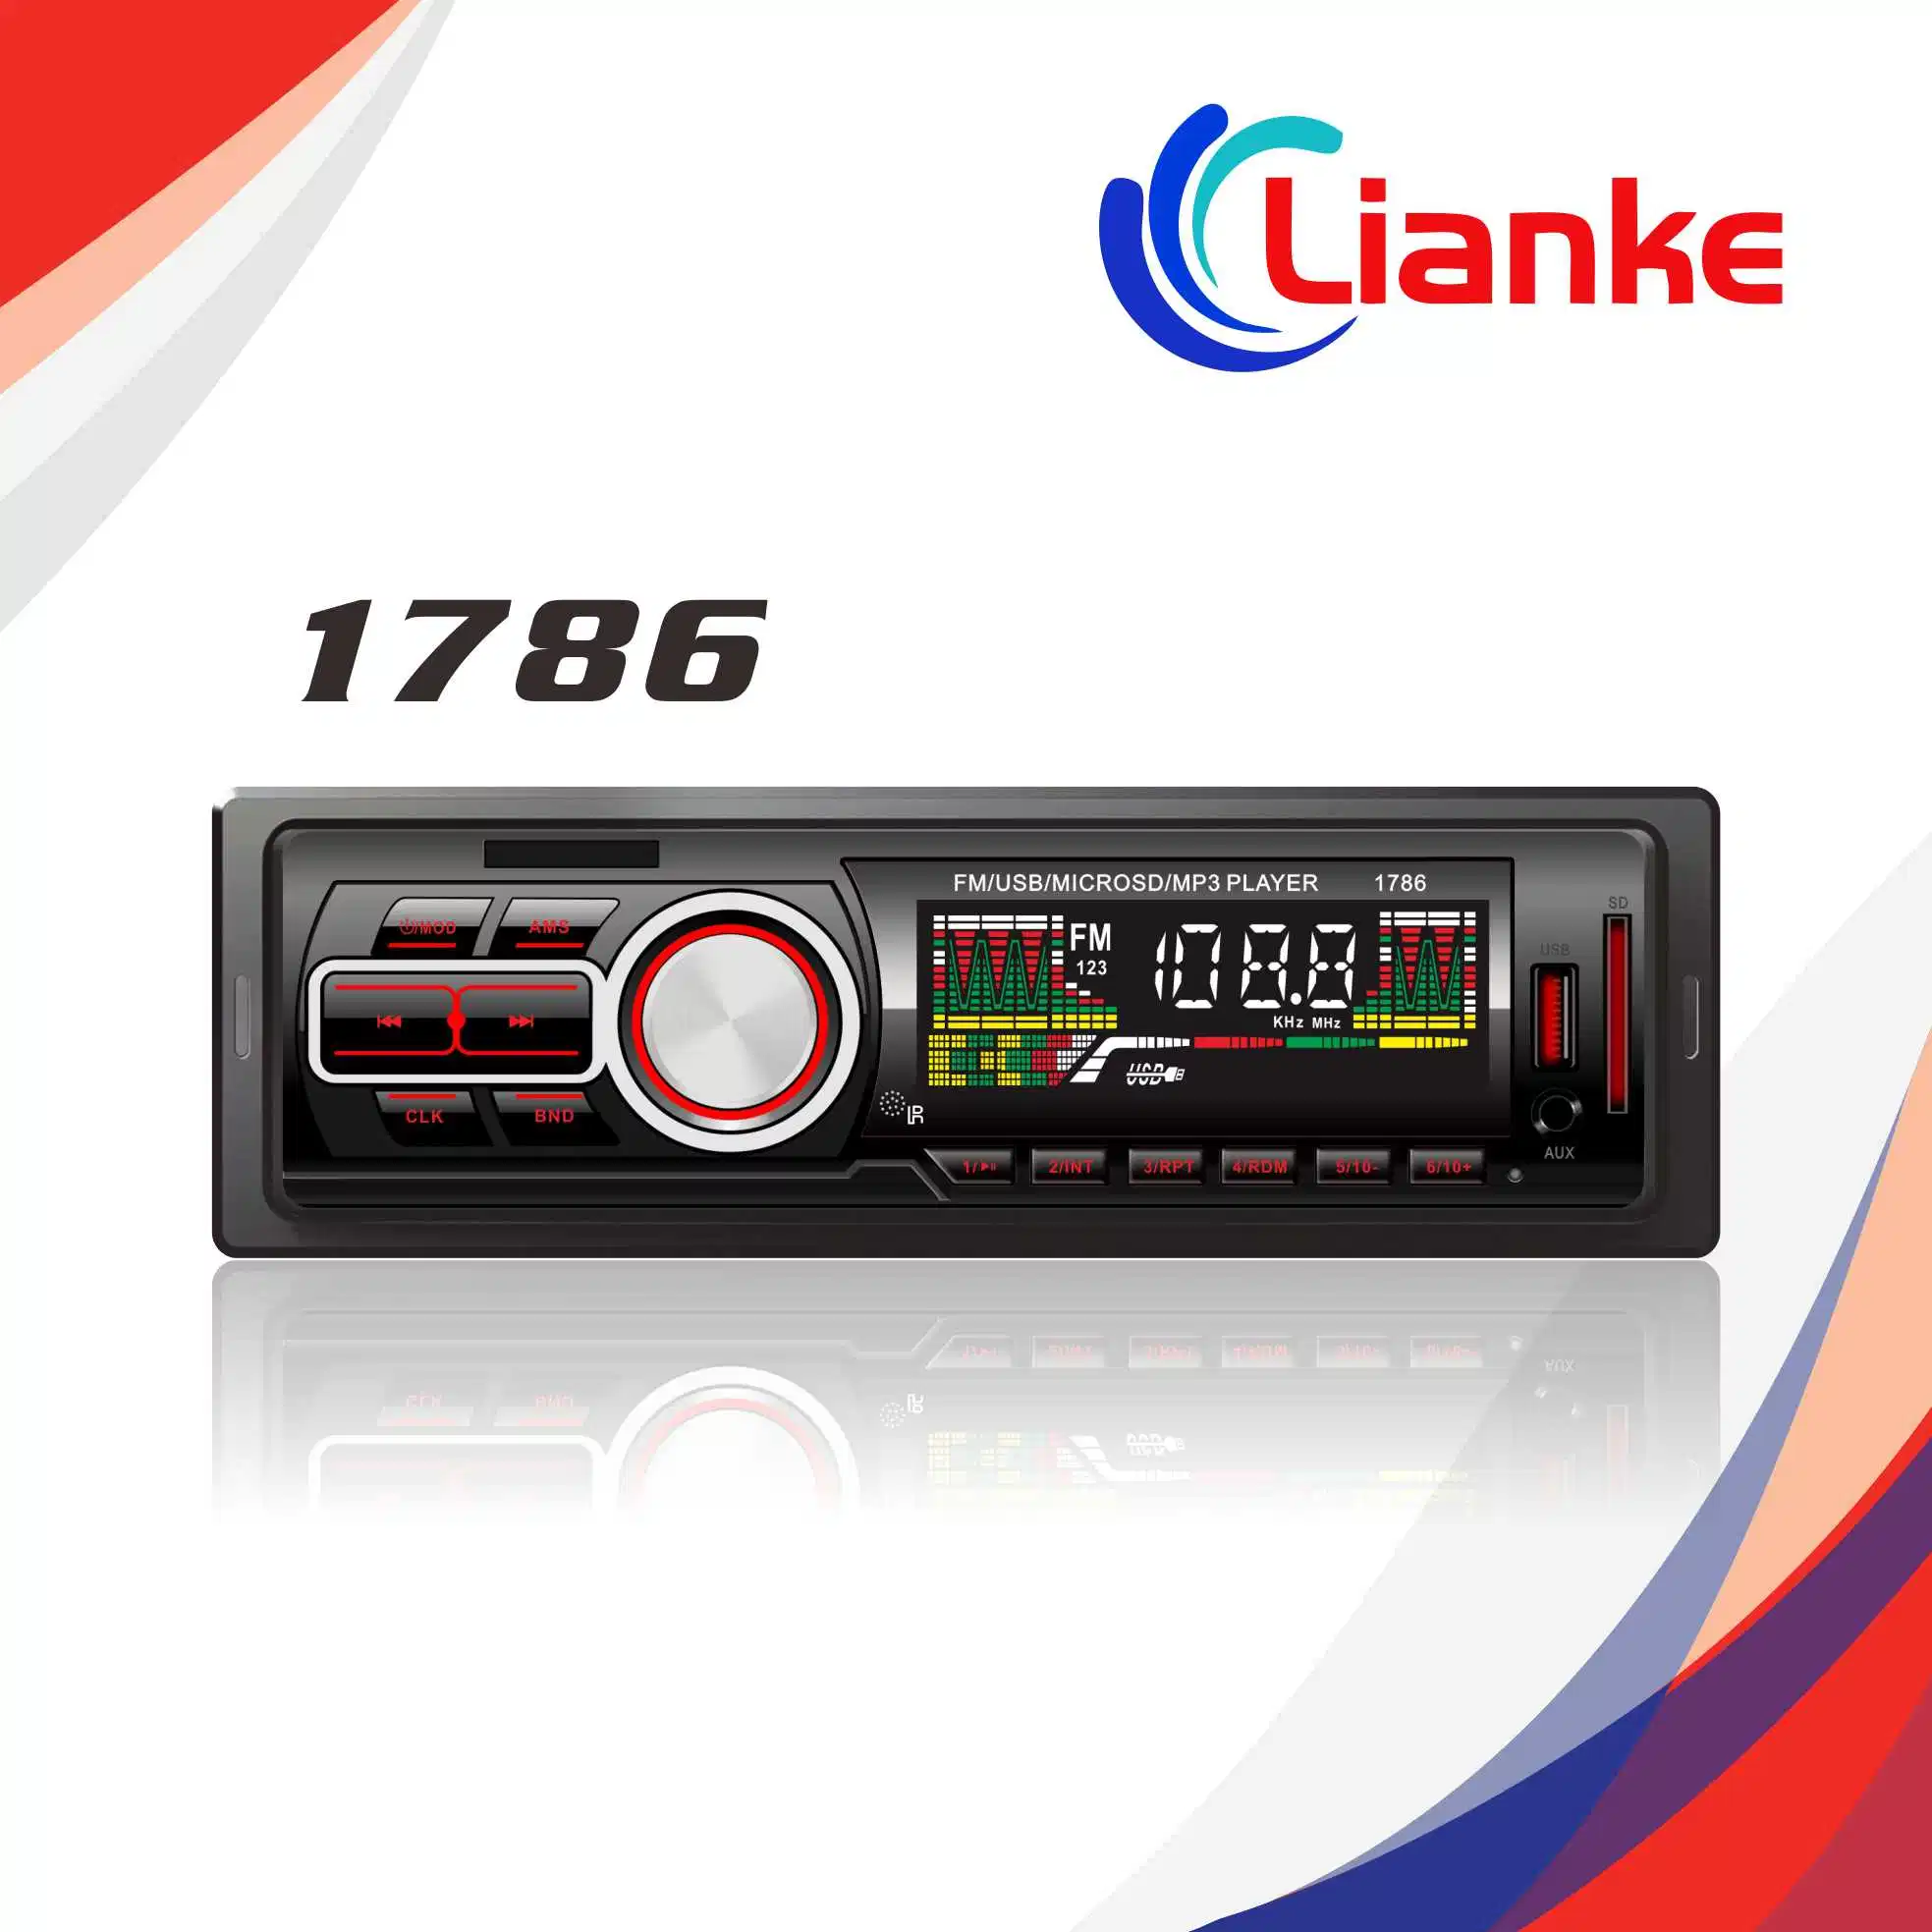 Hot Sale Panel Single DIN Car FM Am MP3 Radio/1786